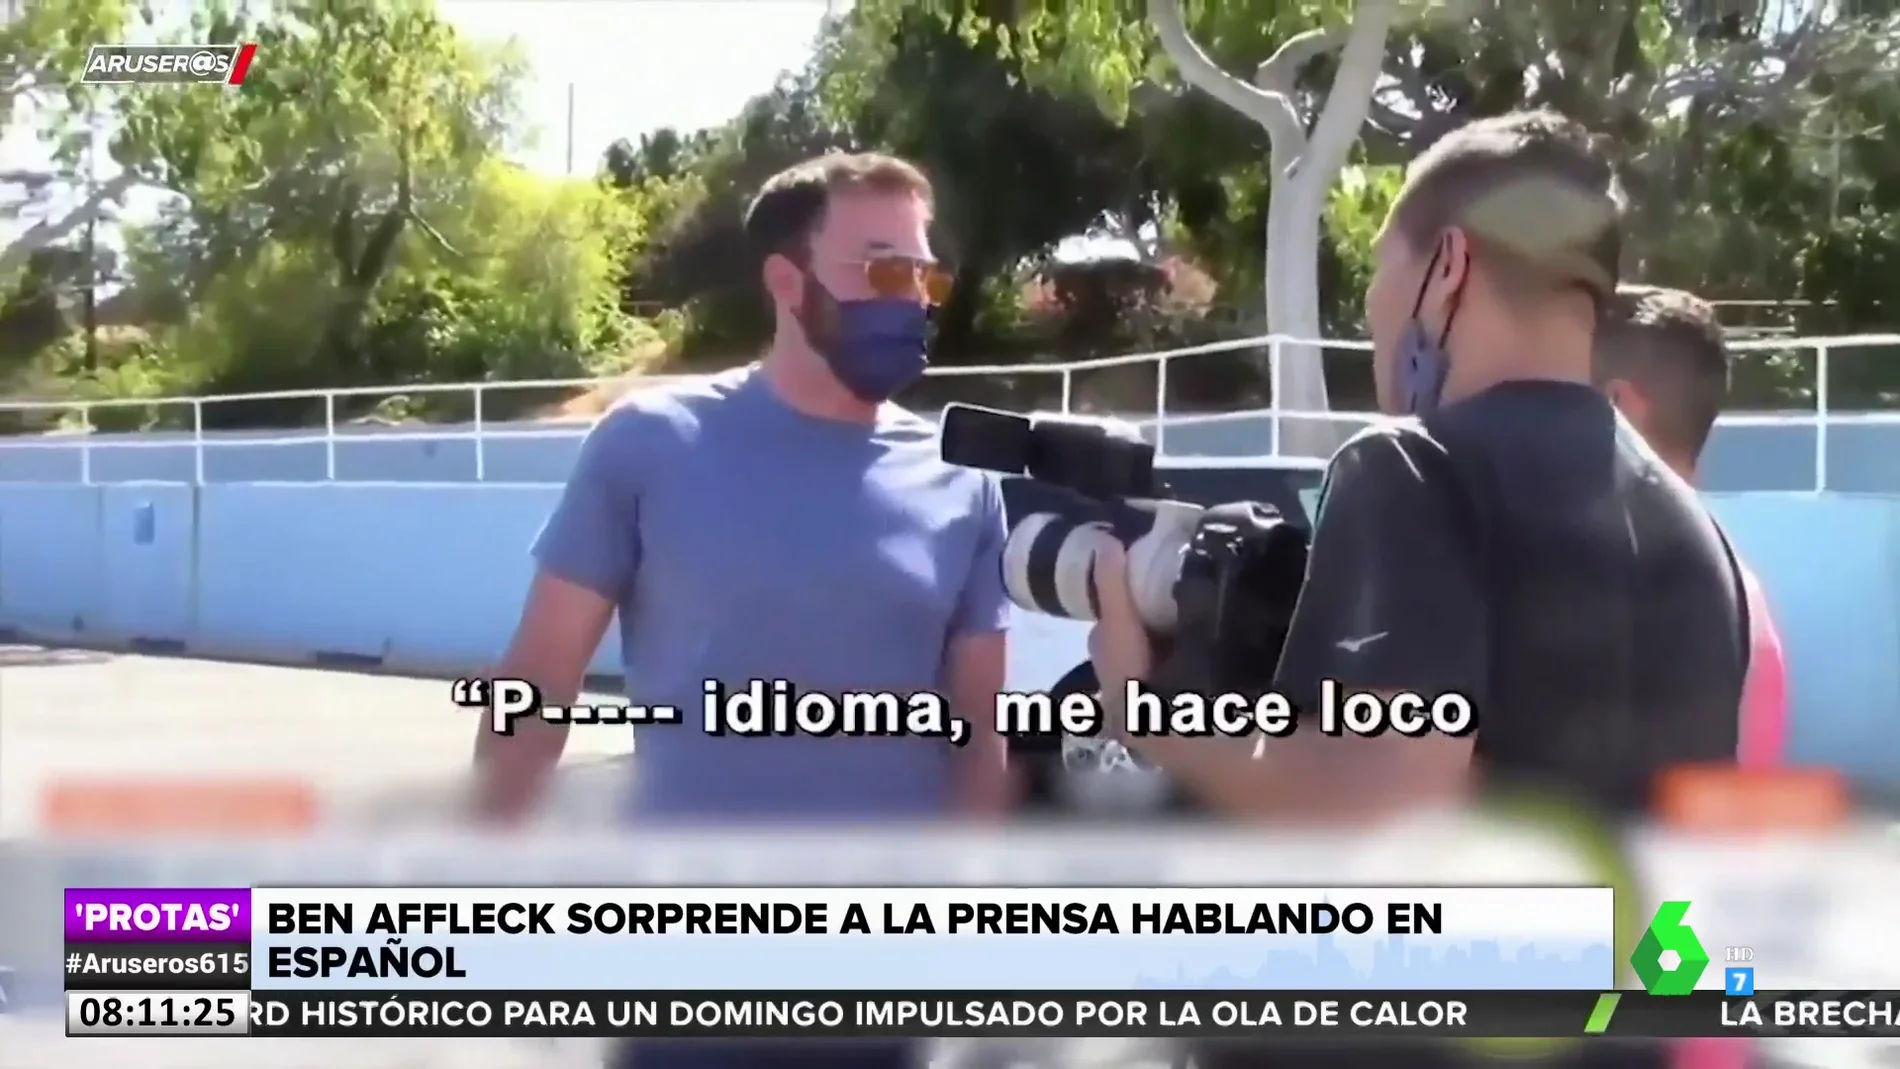 Ben Affleck sorprende a la prensa hablando español: "Es muy difícil. Puto idioma"